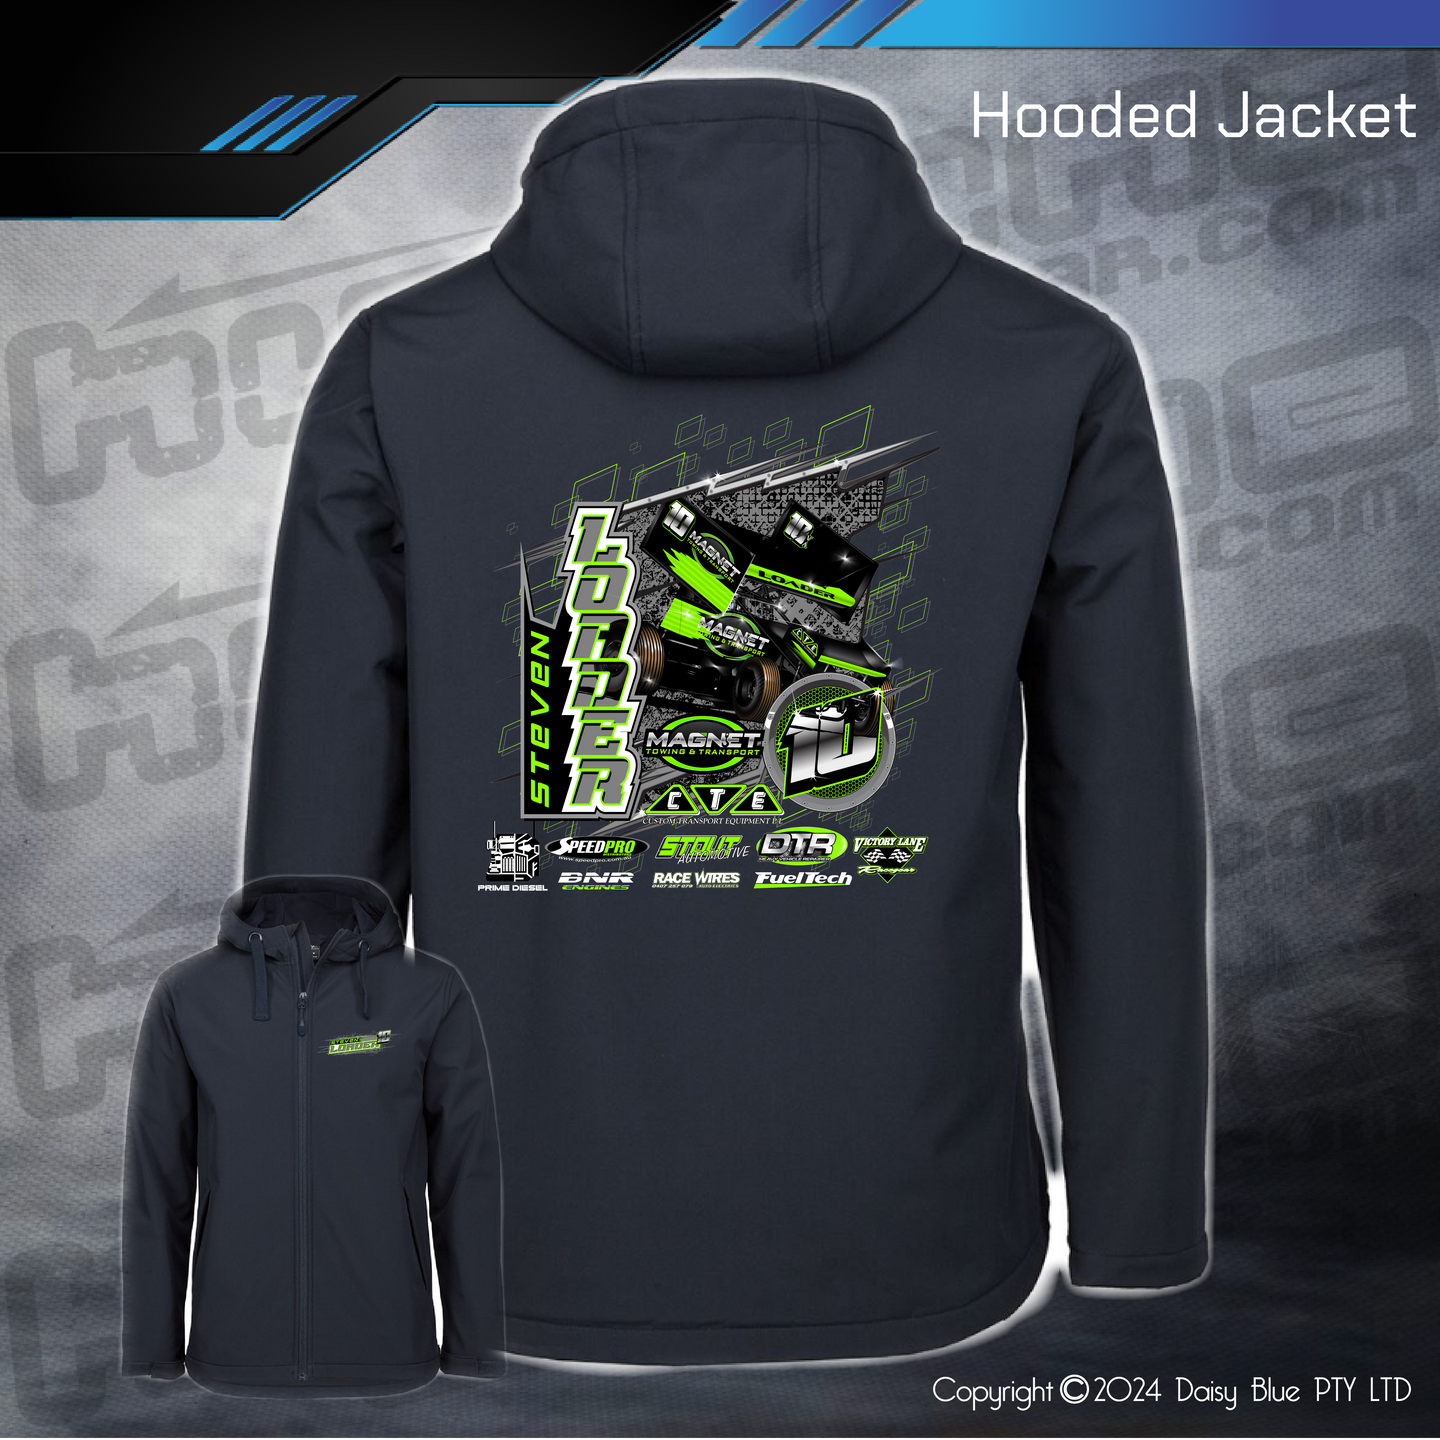 Hooded Jacket - Steve Loader Sprint Car